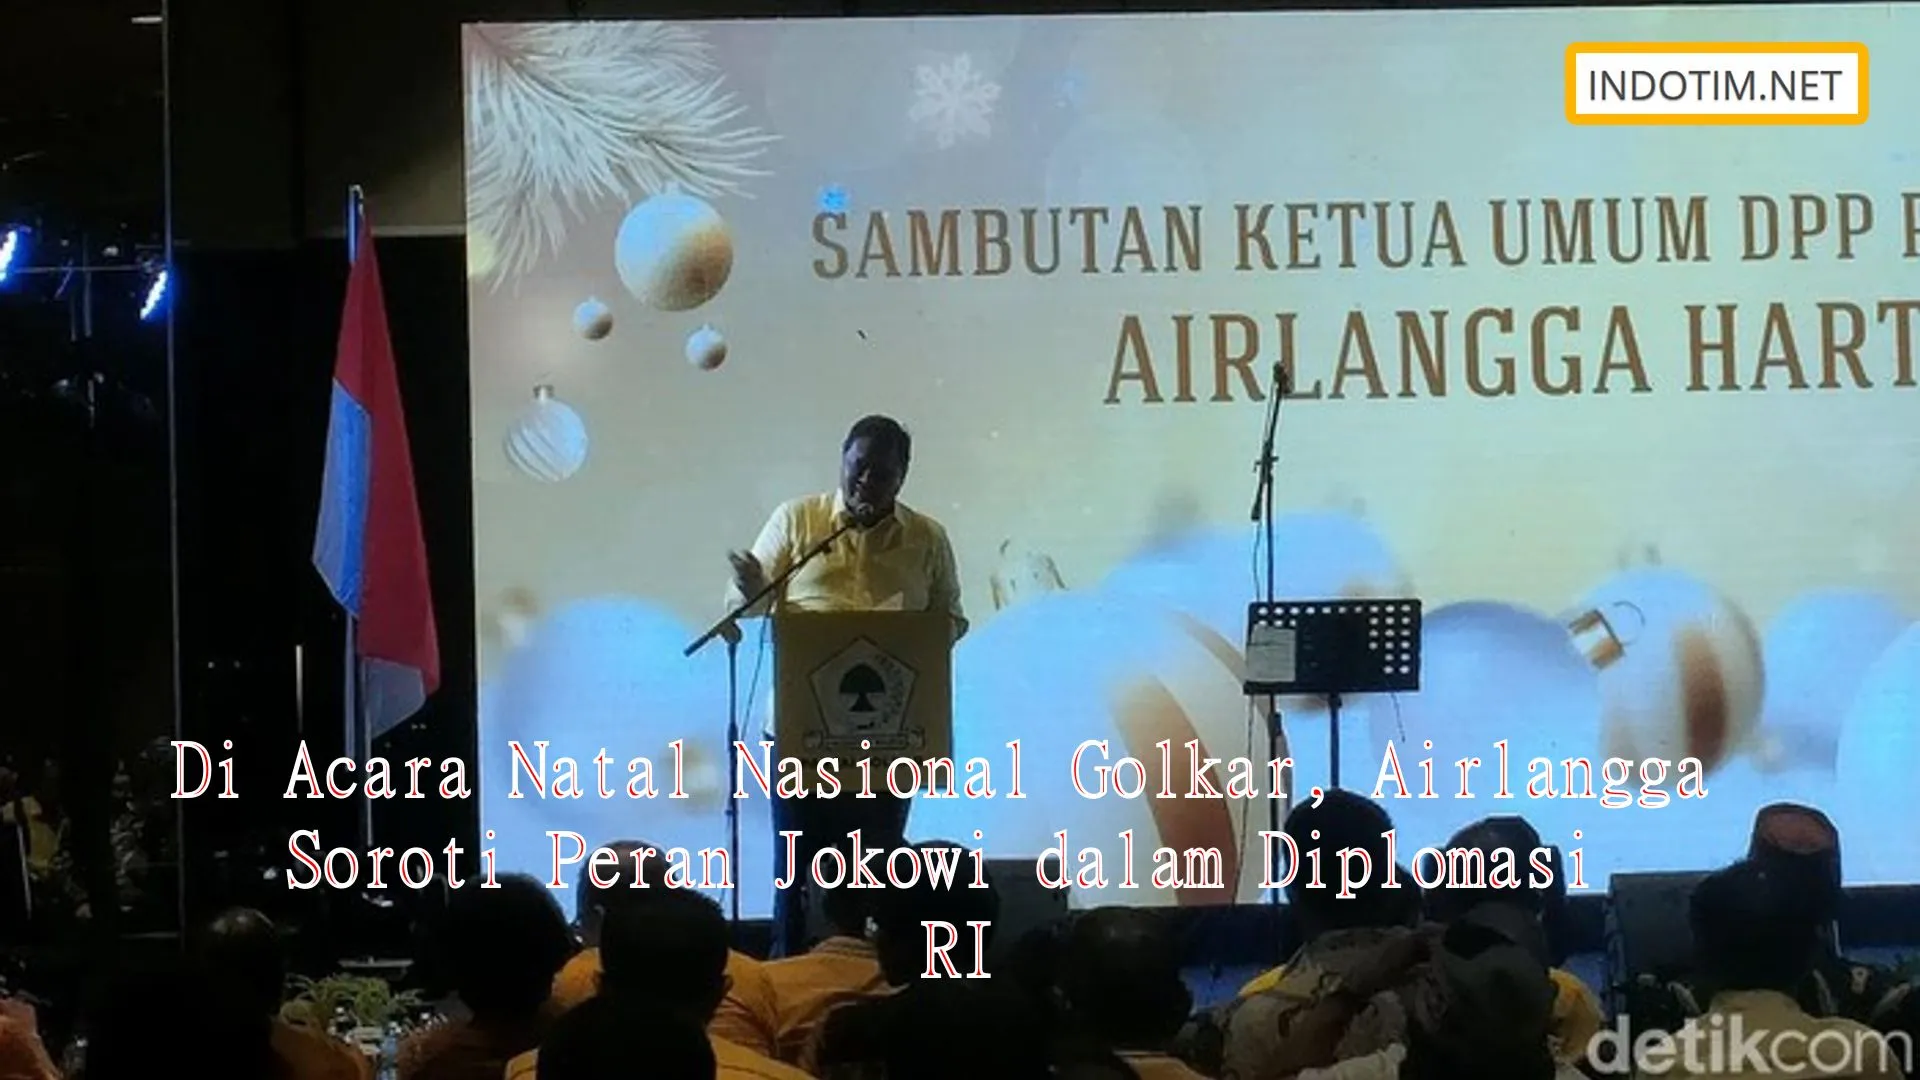 Di Acara Natal Nasional Golkar, Airlangga Soroti Peran Jokowi dalam Diplomasi RI